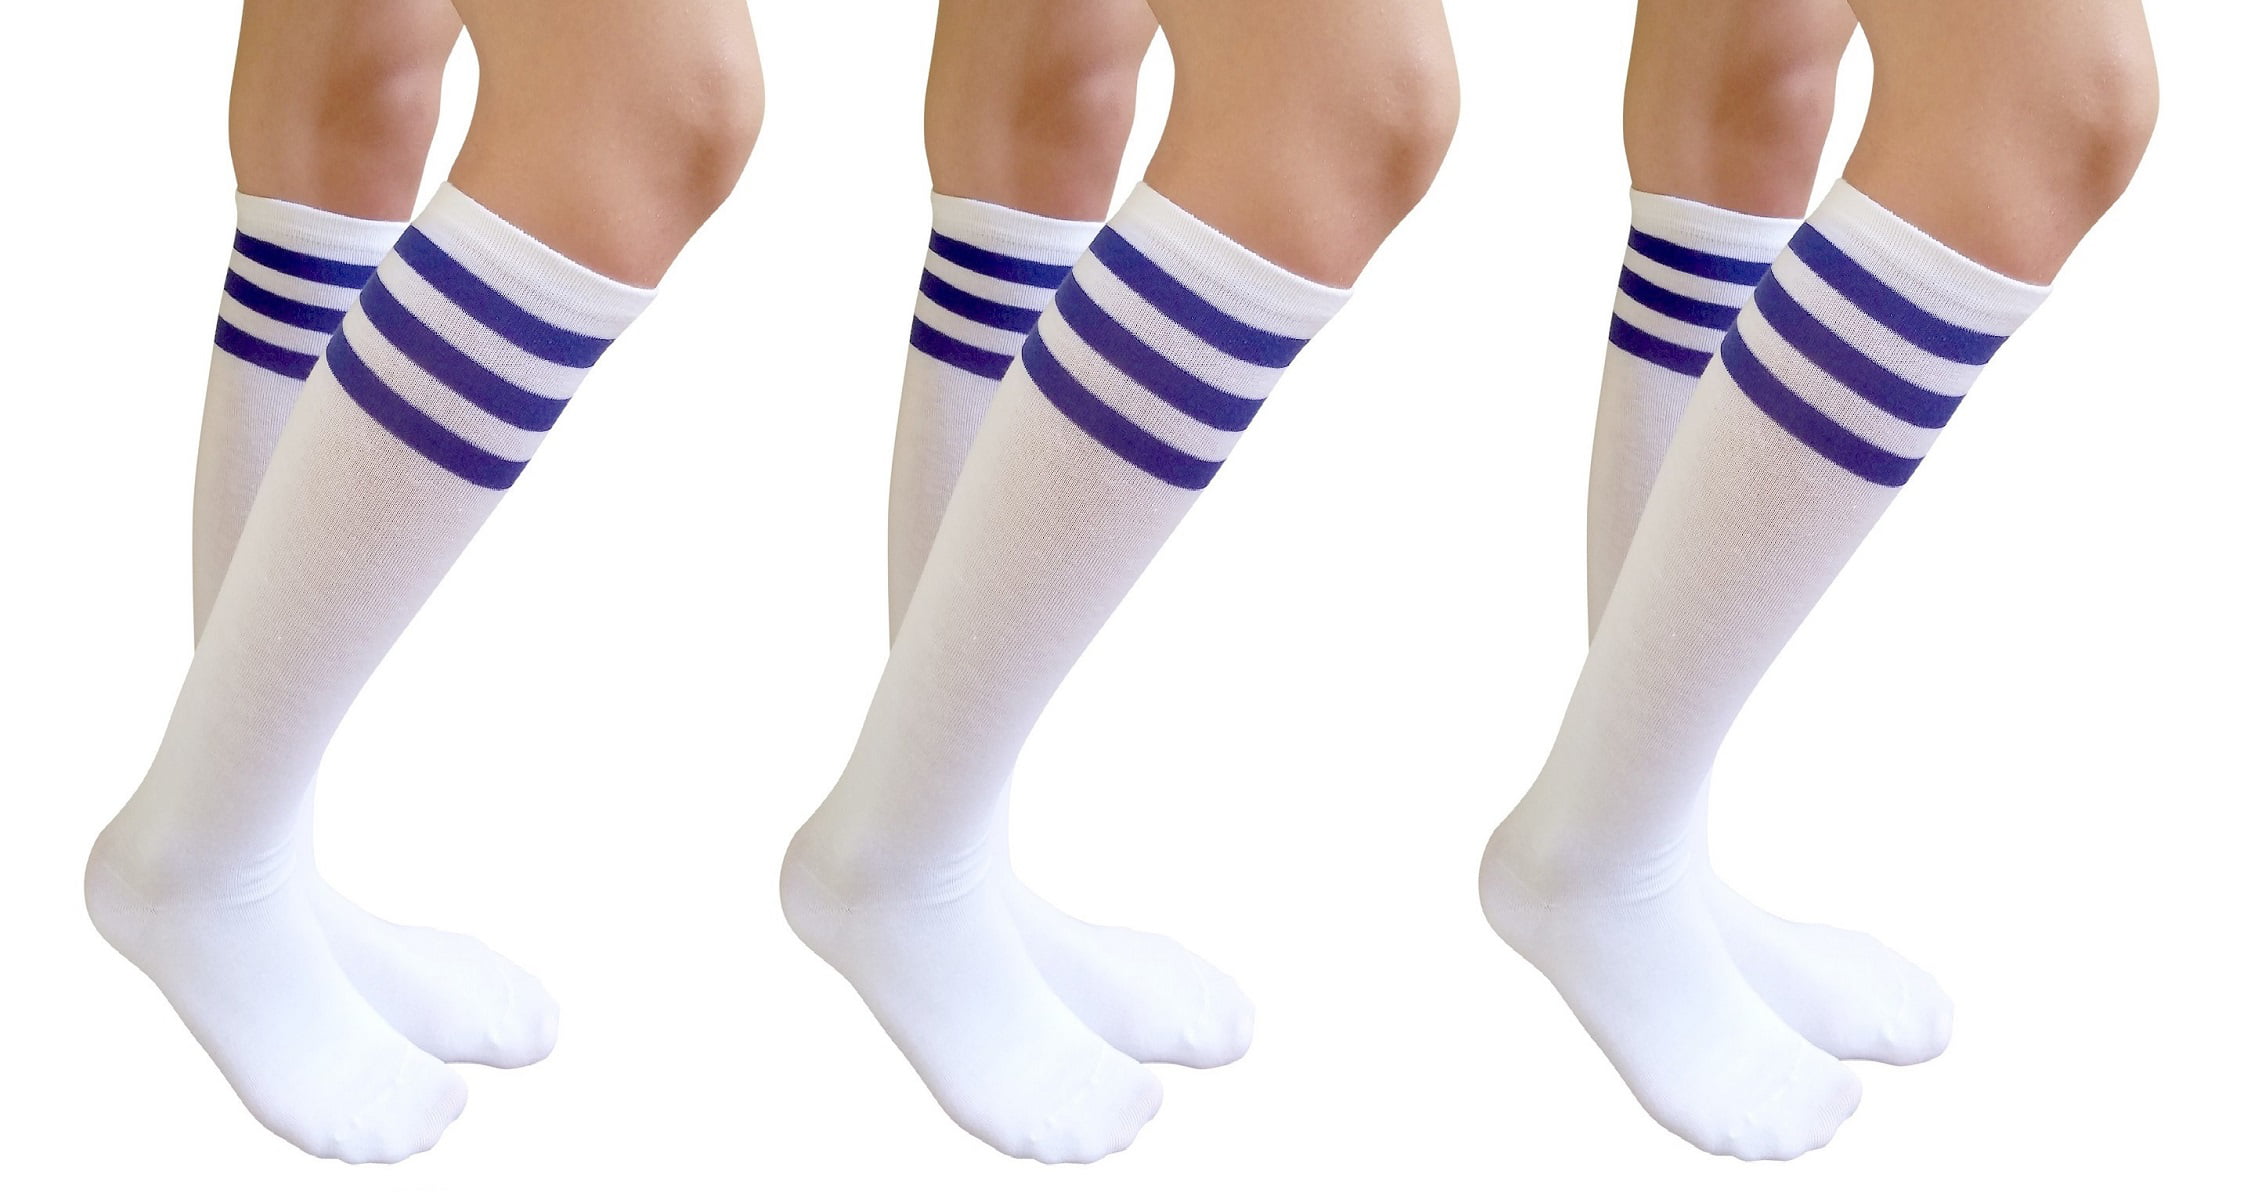 Dreamgirls in socks. Dreamgirl Socks. Ushijima Stripe Socks. Dirty White Socks. Striped Socks Gloves.